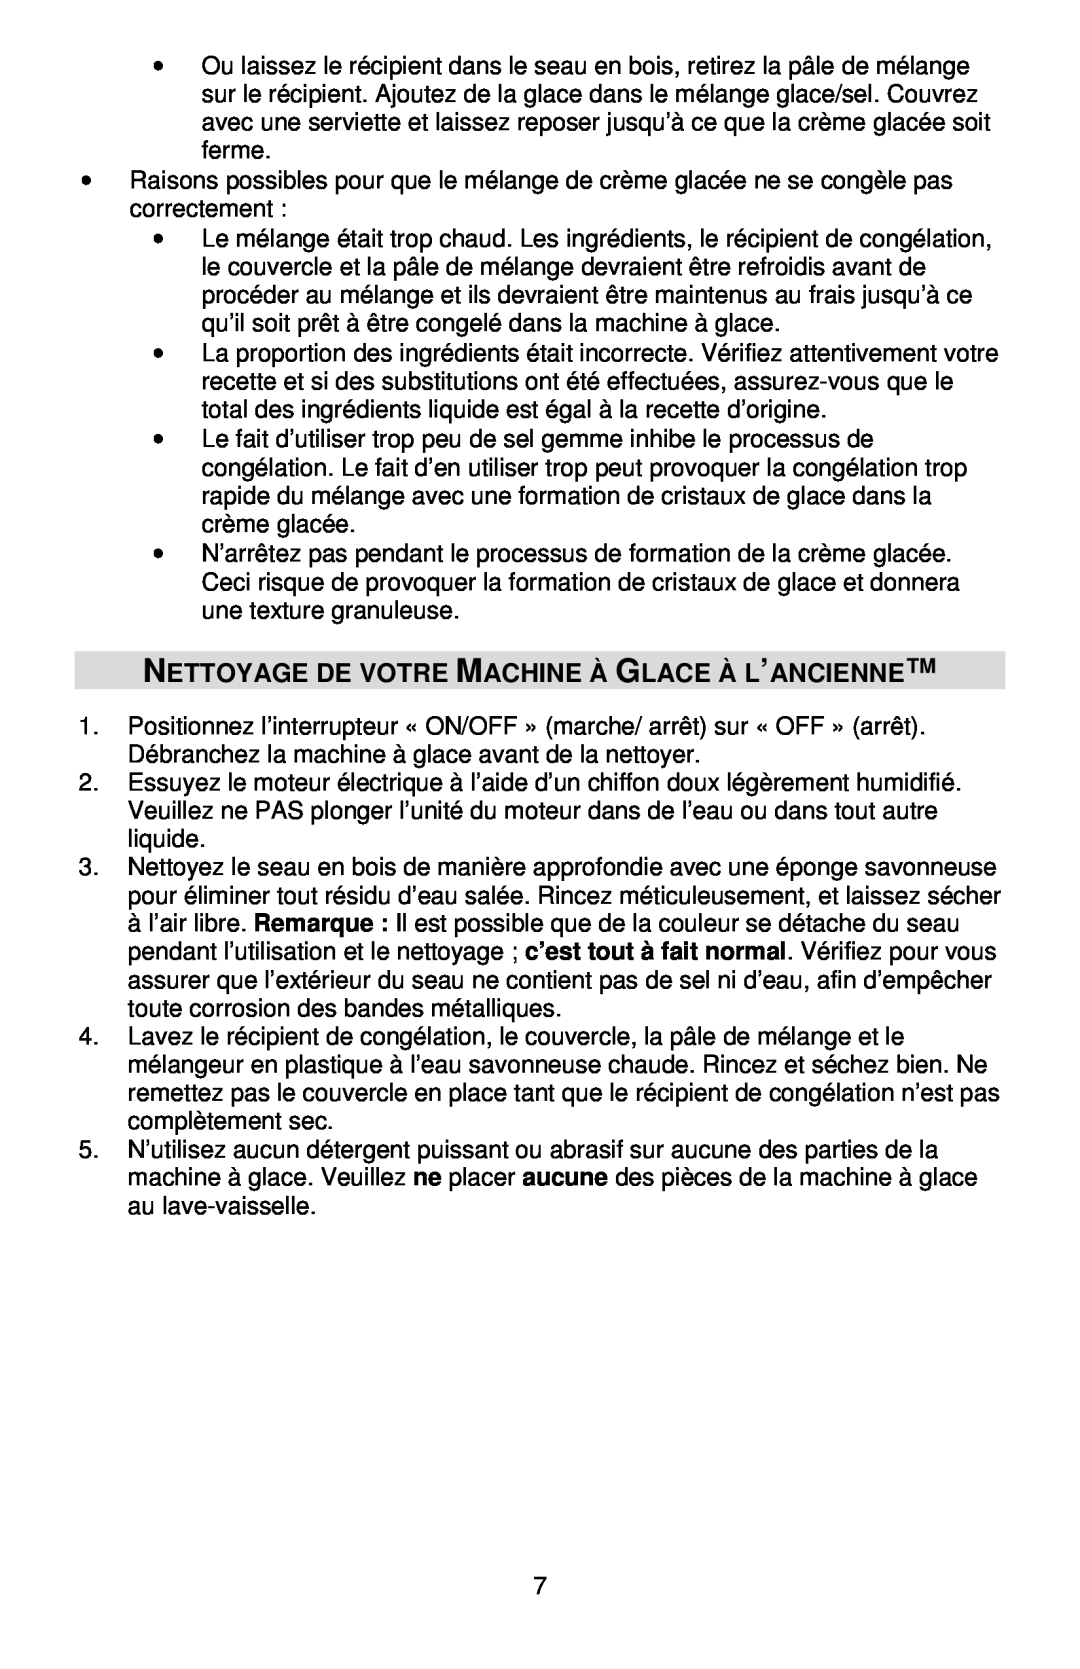 West Bend IC12701 instruction manual Nettoyage De Votre Machine À Glace À L’Ancienne 